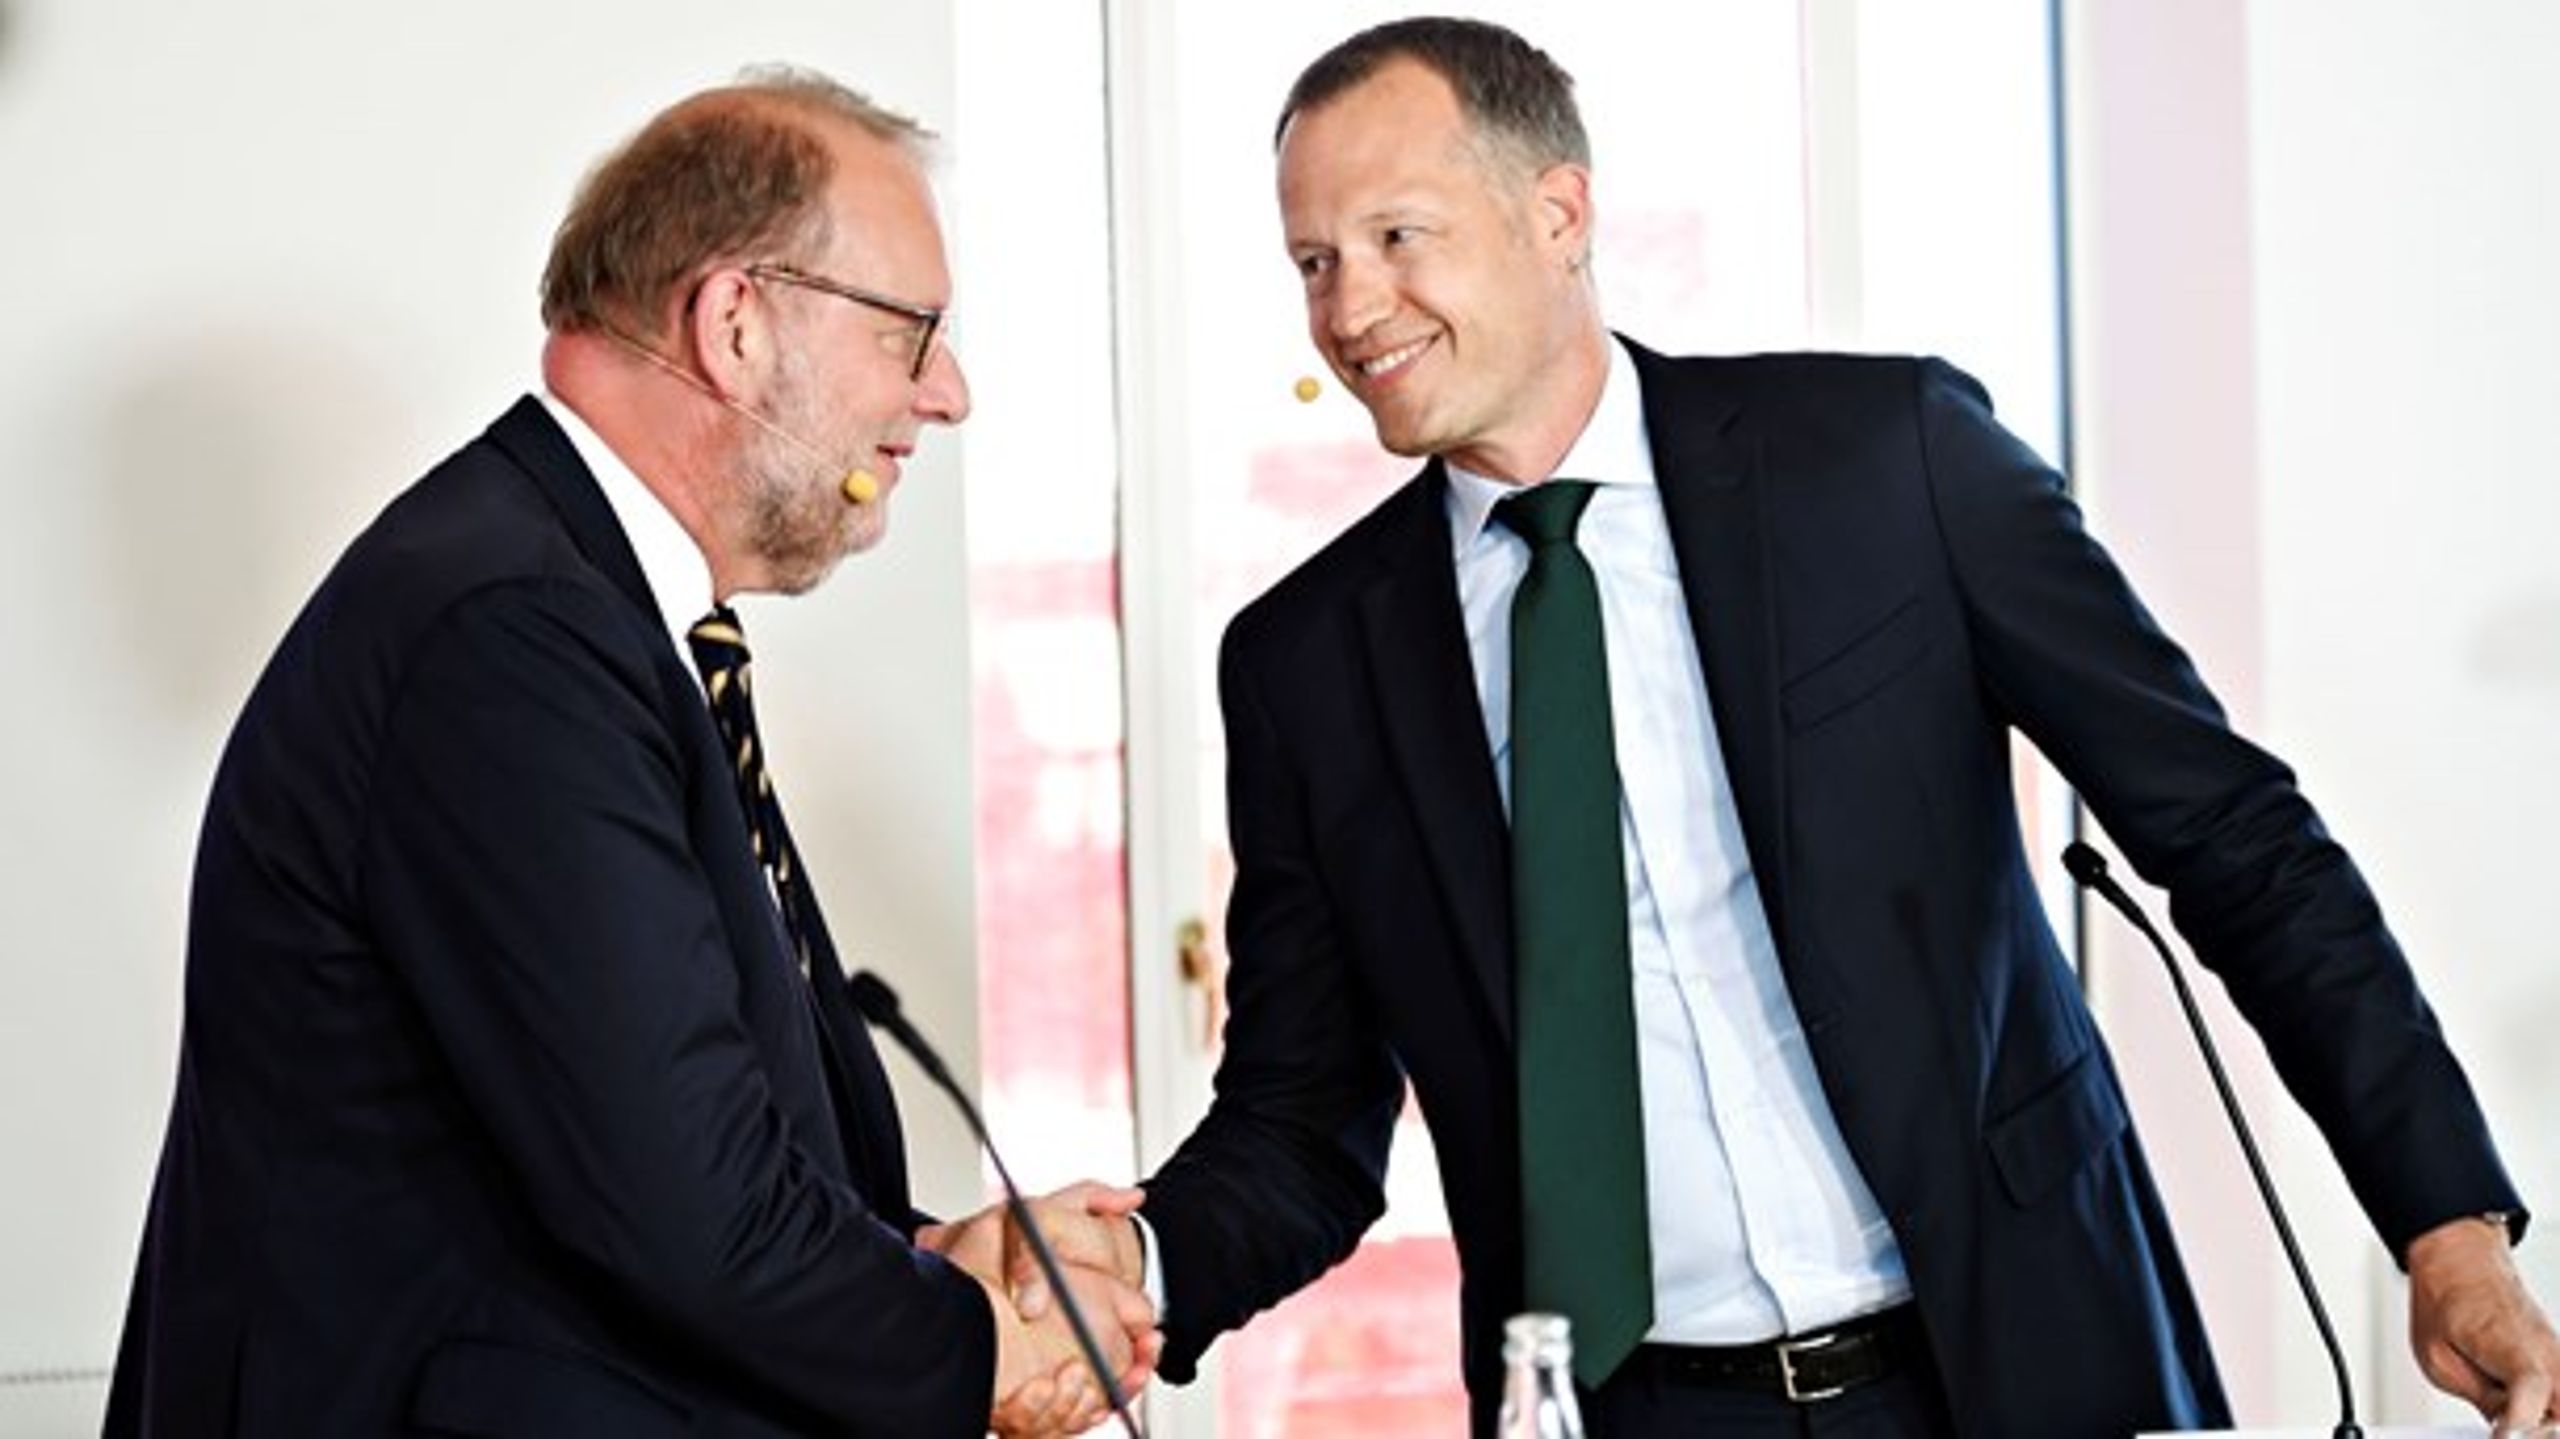 Afgårende klimaminister Lars Chr. Lilleholt (V) og departementschef Morten Bæk ved ministeroverdragelsen torsdag eftermiddag.